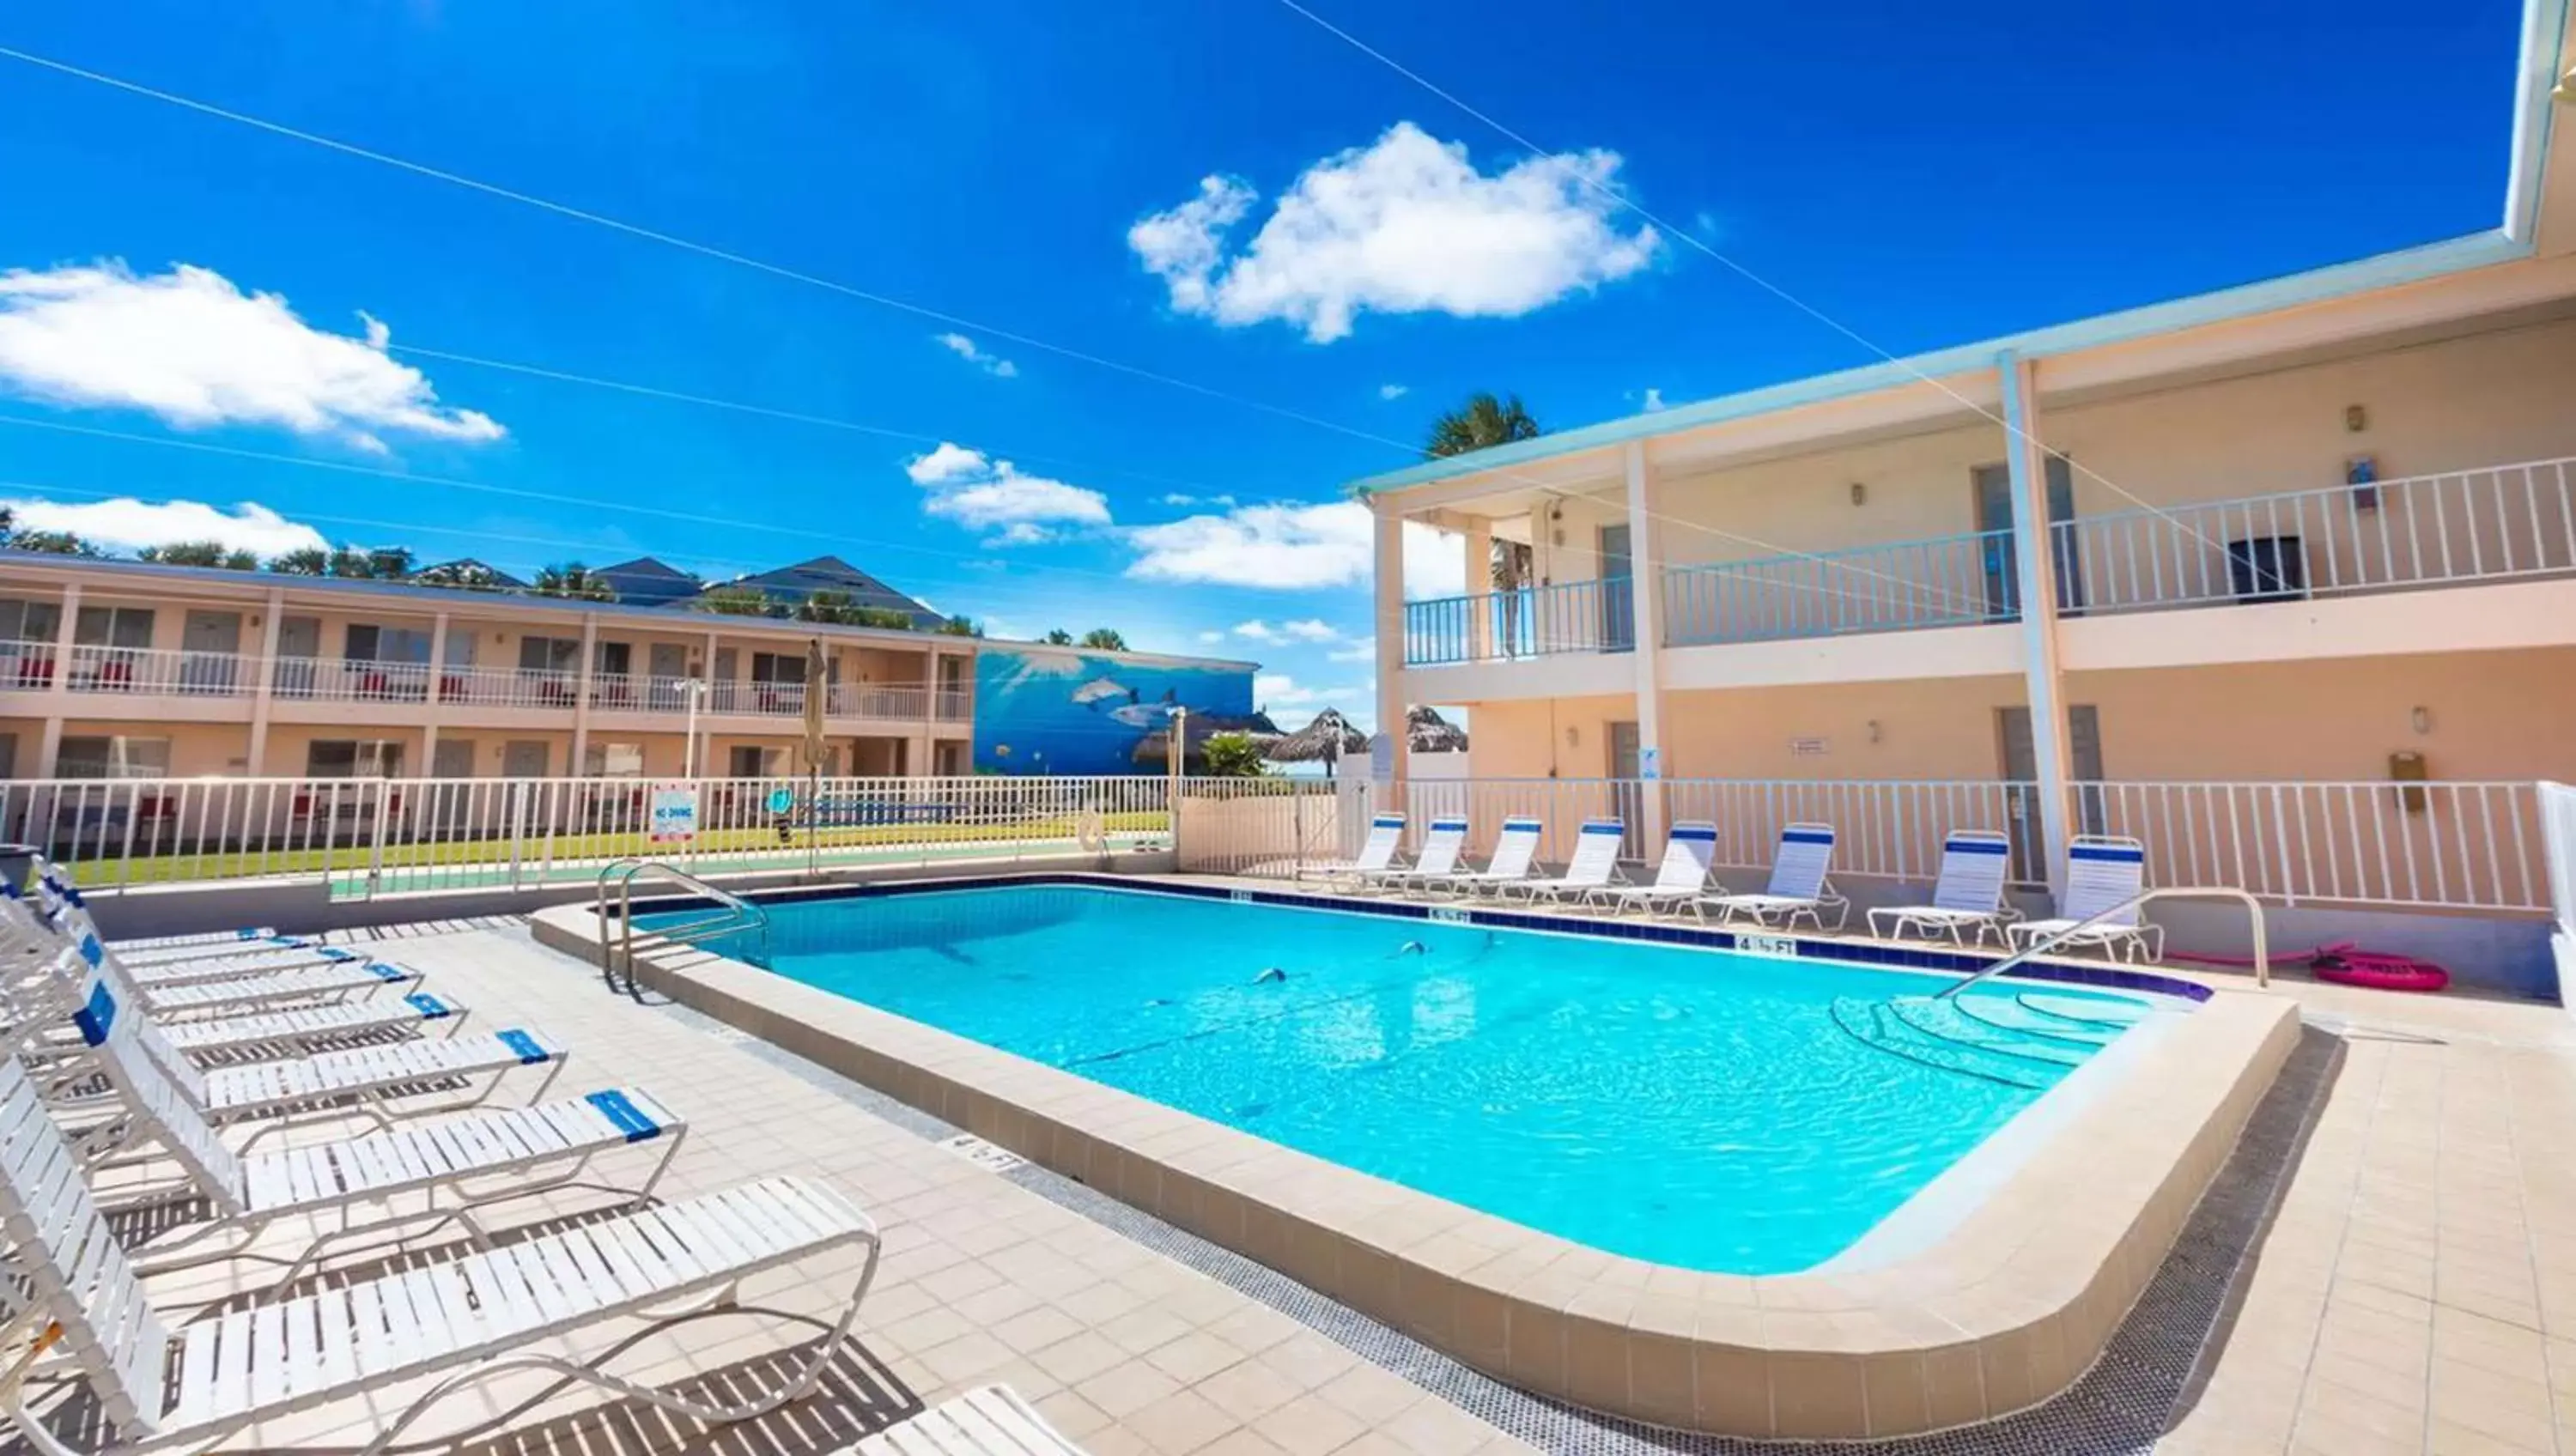 Swimming pool in Belleair Beach Resort Motel